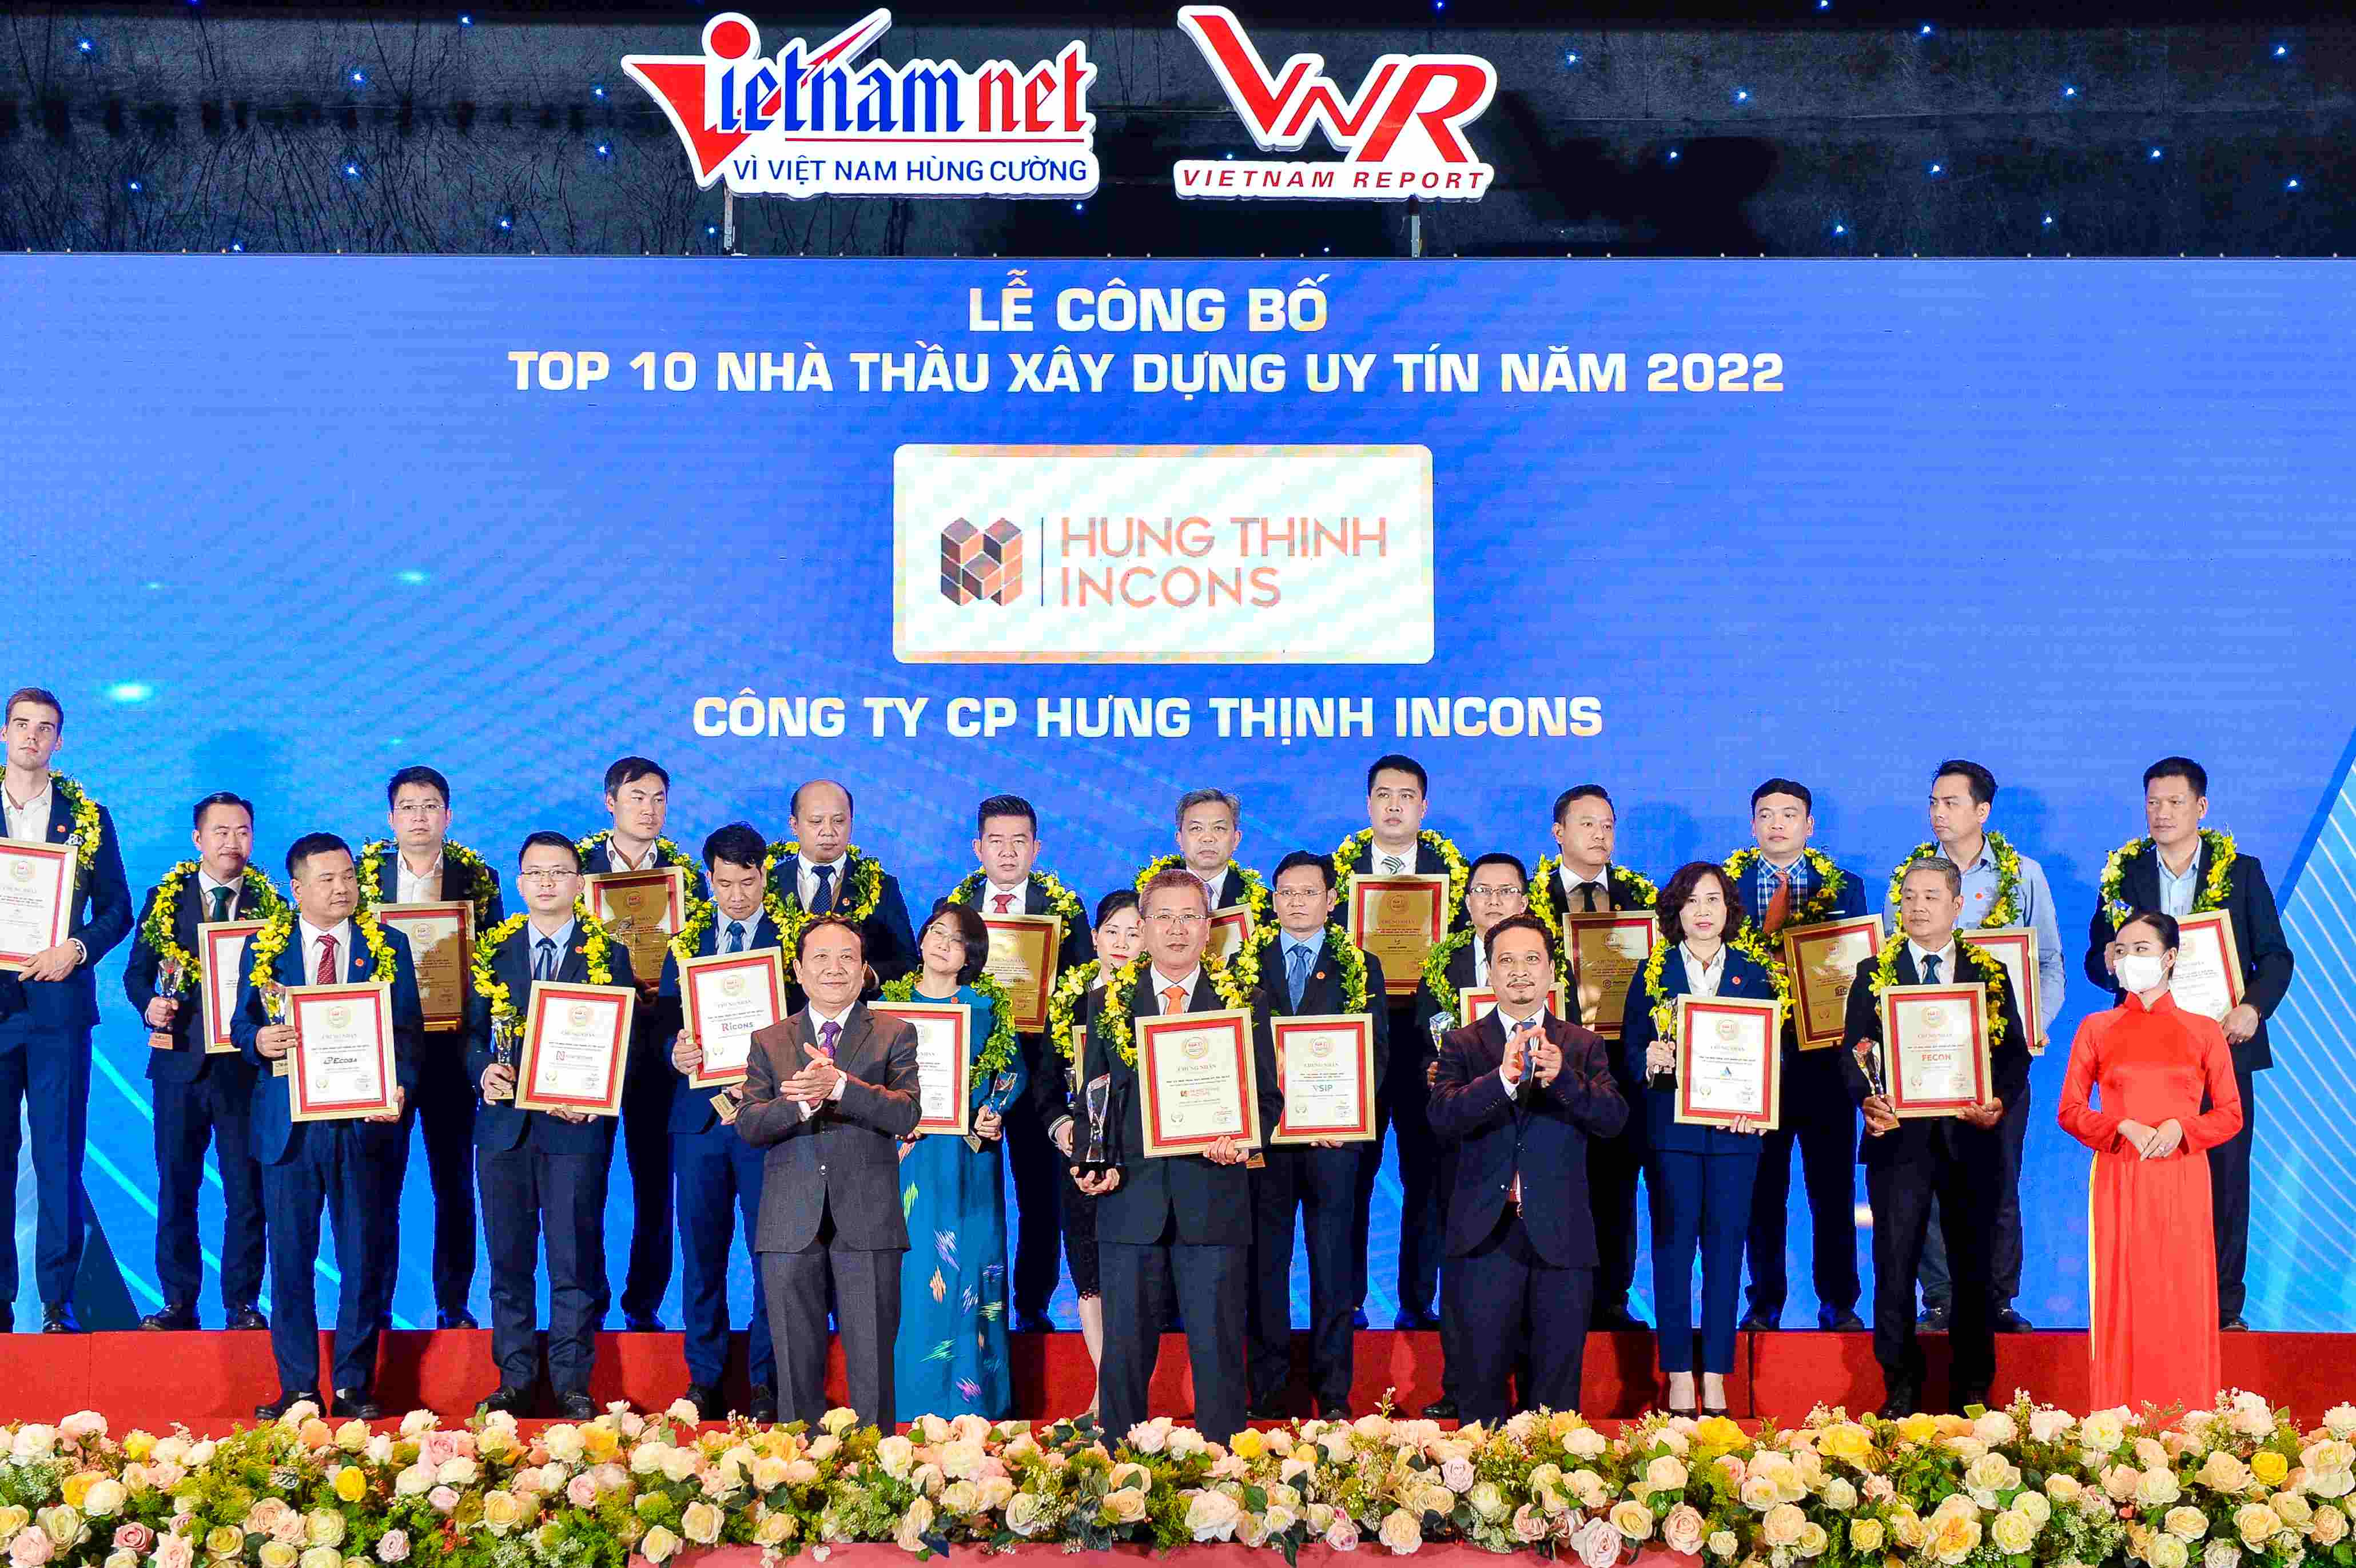 Hưng Thịnh Incons tự hào đạt “Top 10 nhà thầu xây dựng uy tín năm 2022”